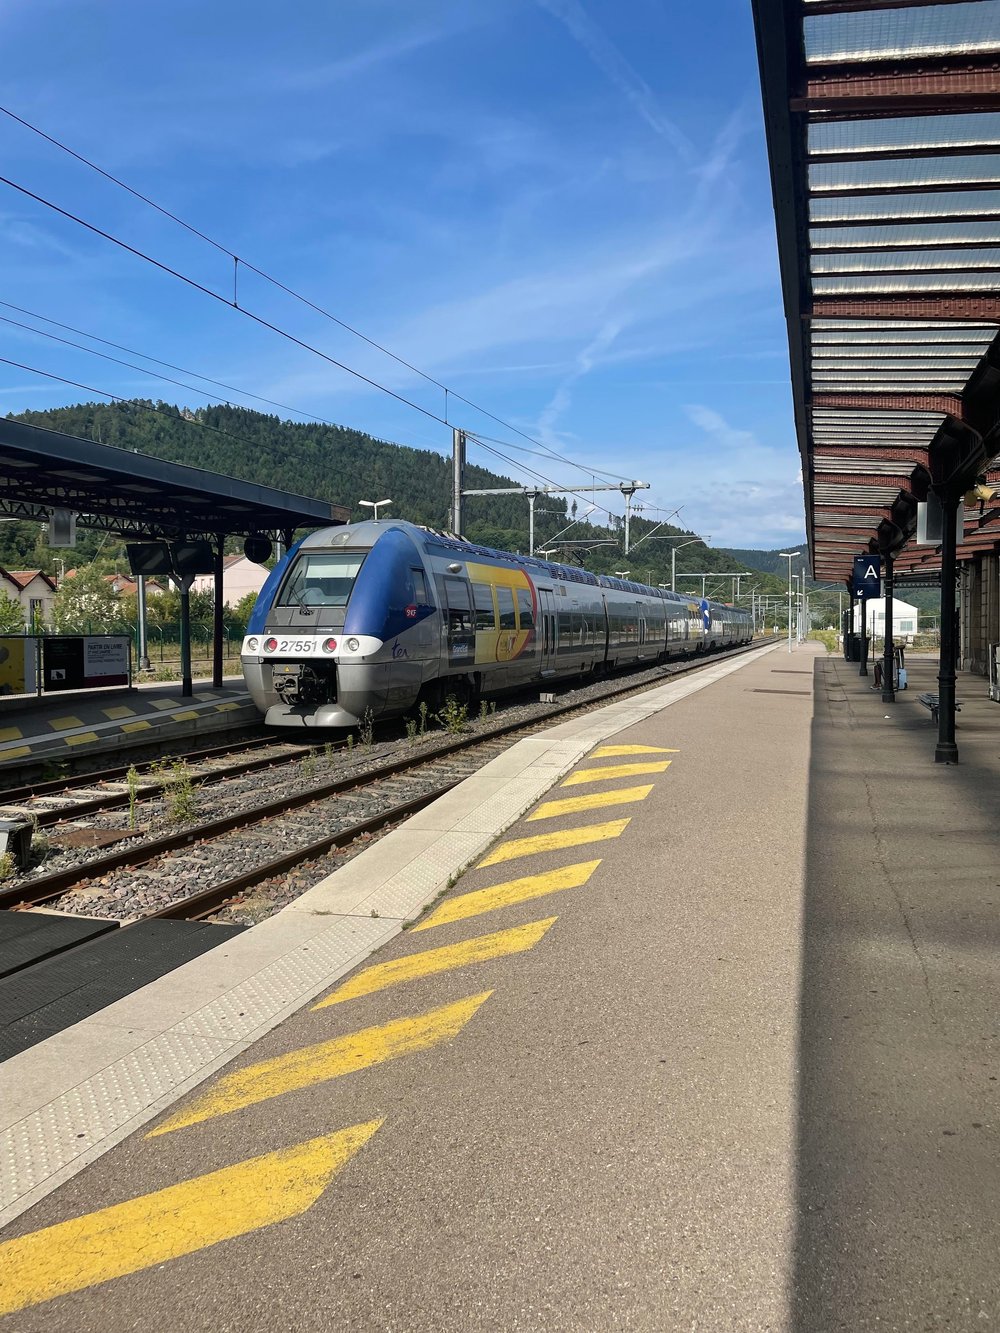 Train Station at Saint-Die-Des-Vosges